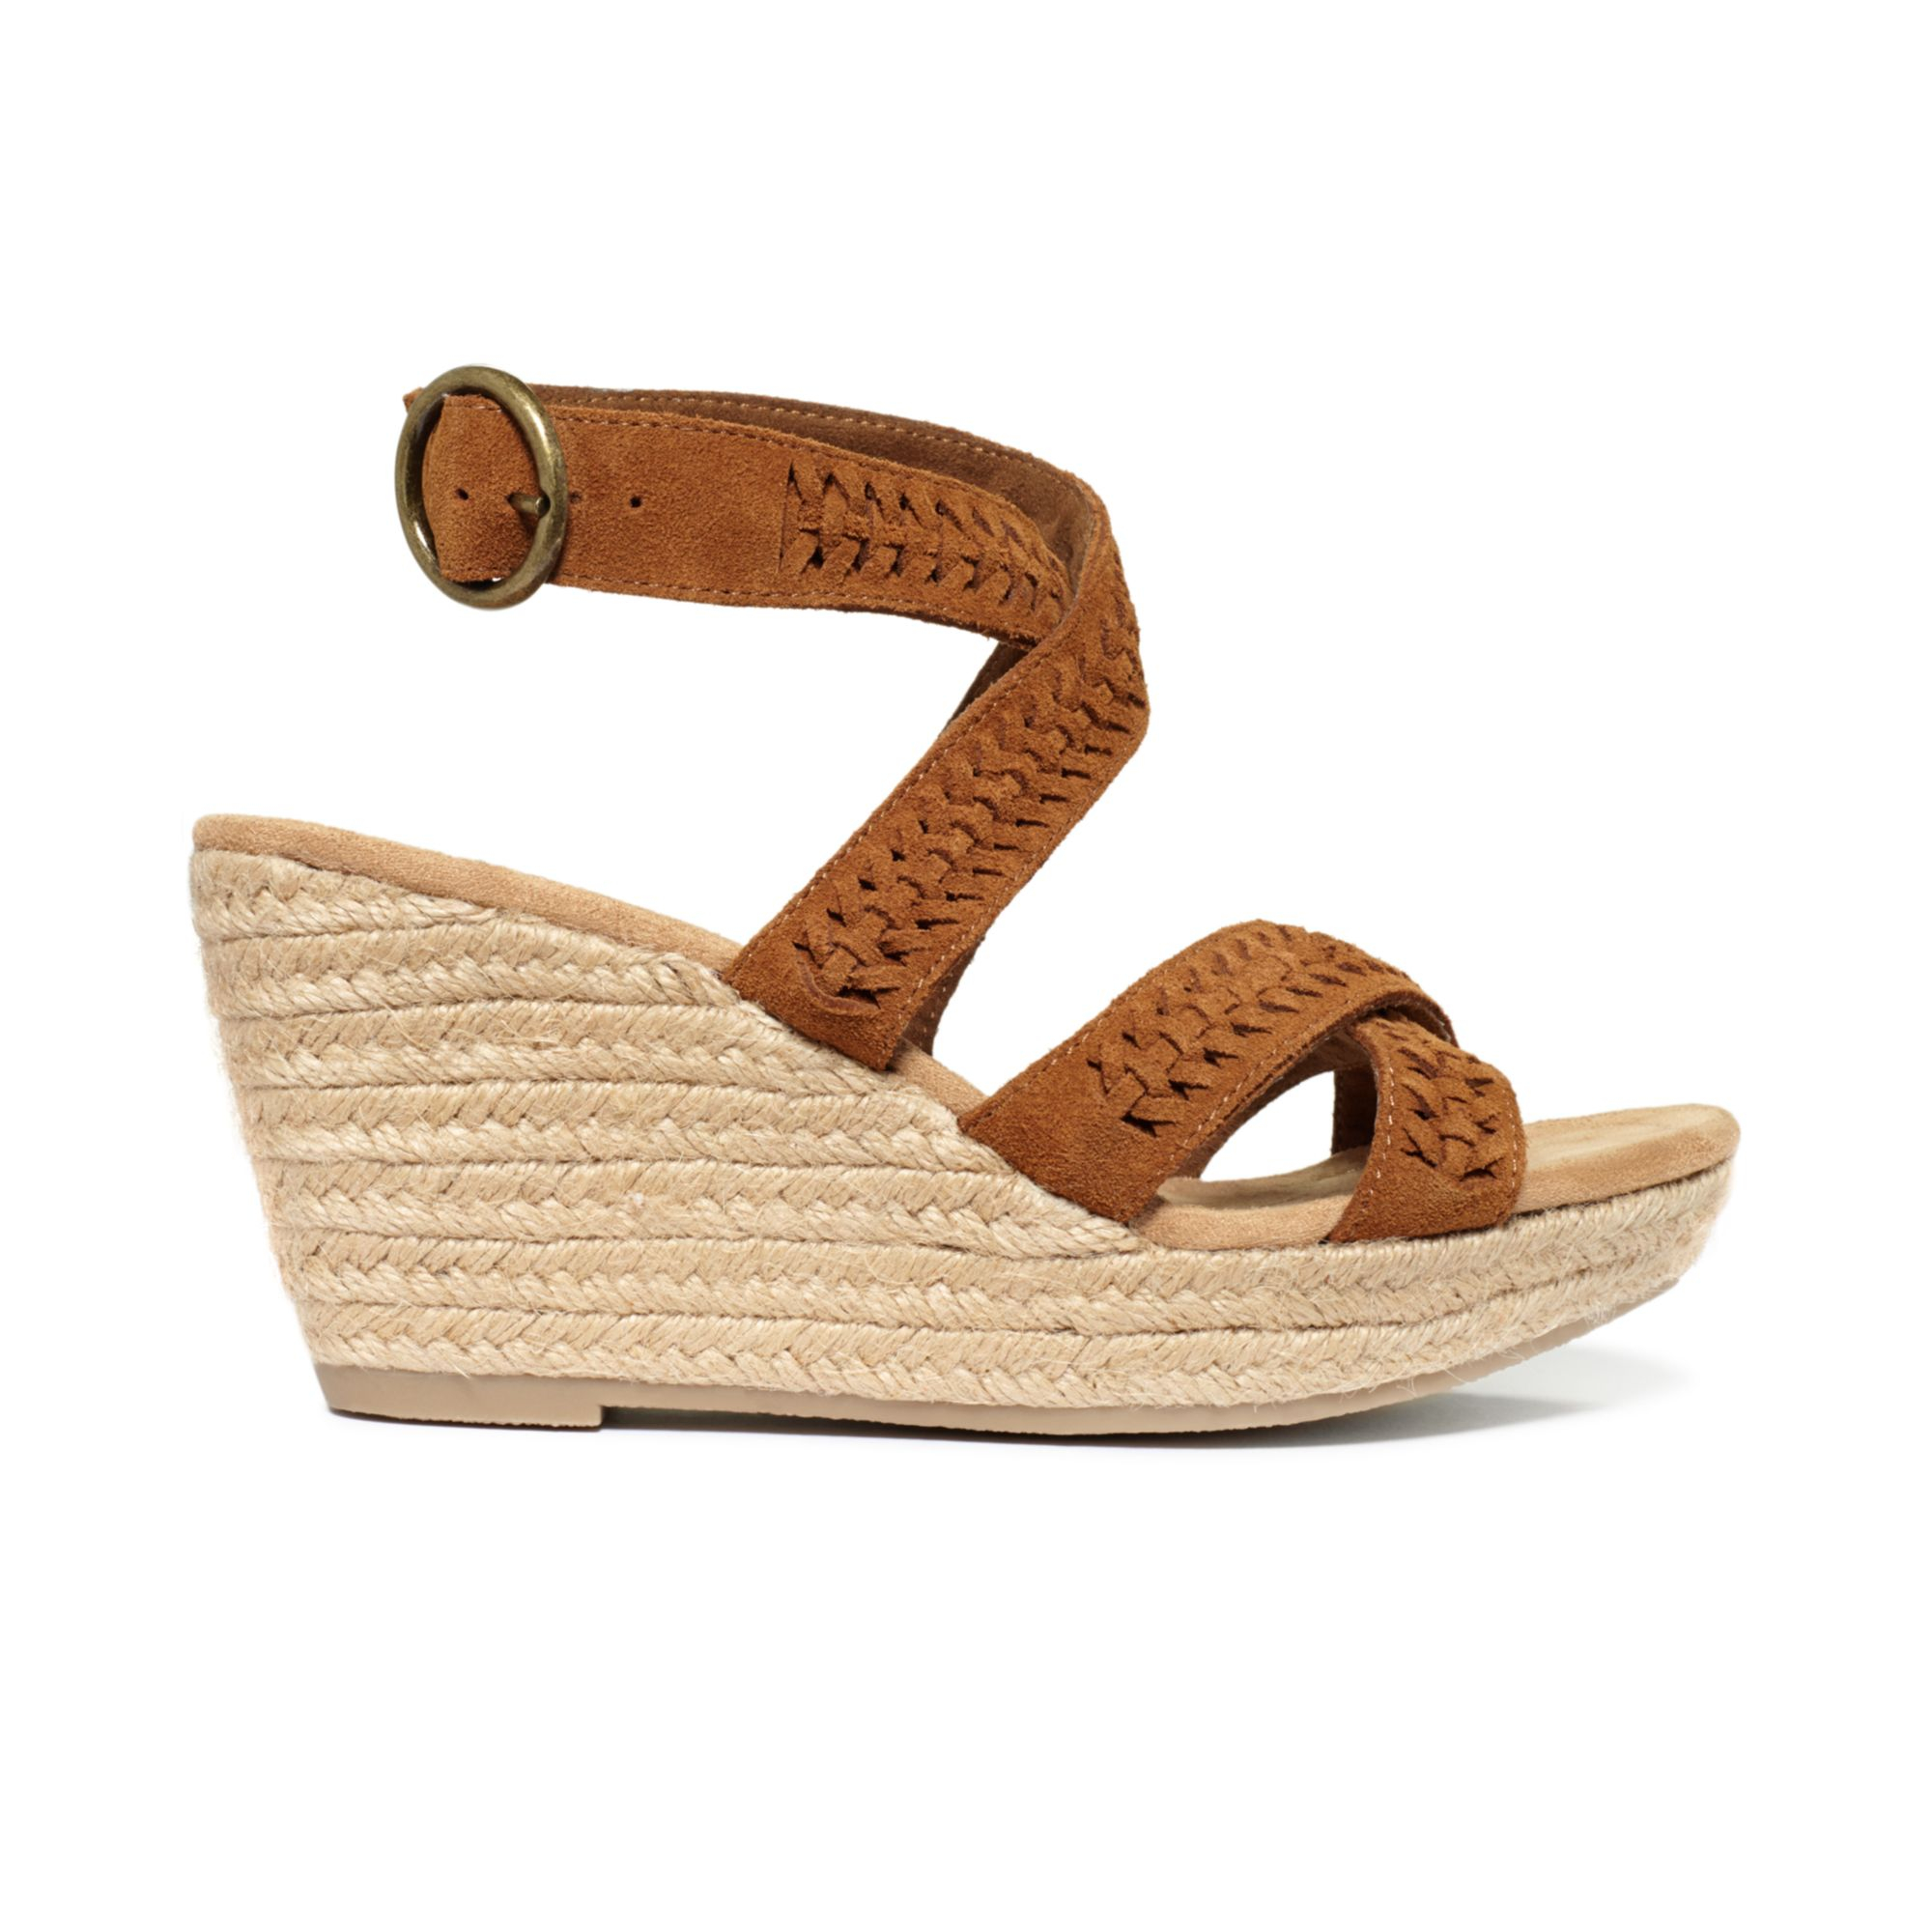 Lyst - Minnetonka Haley Platform Wedge Sandals in Brown